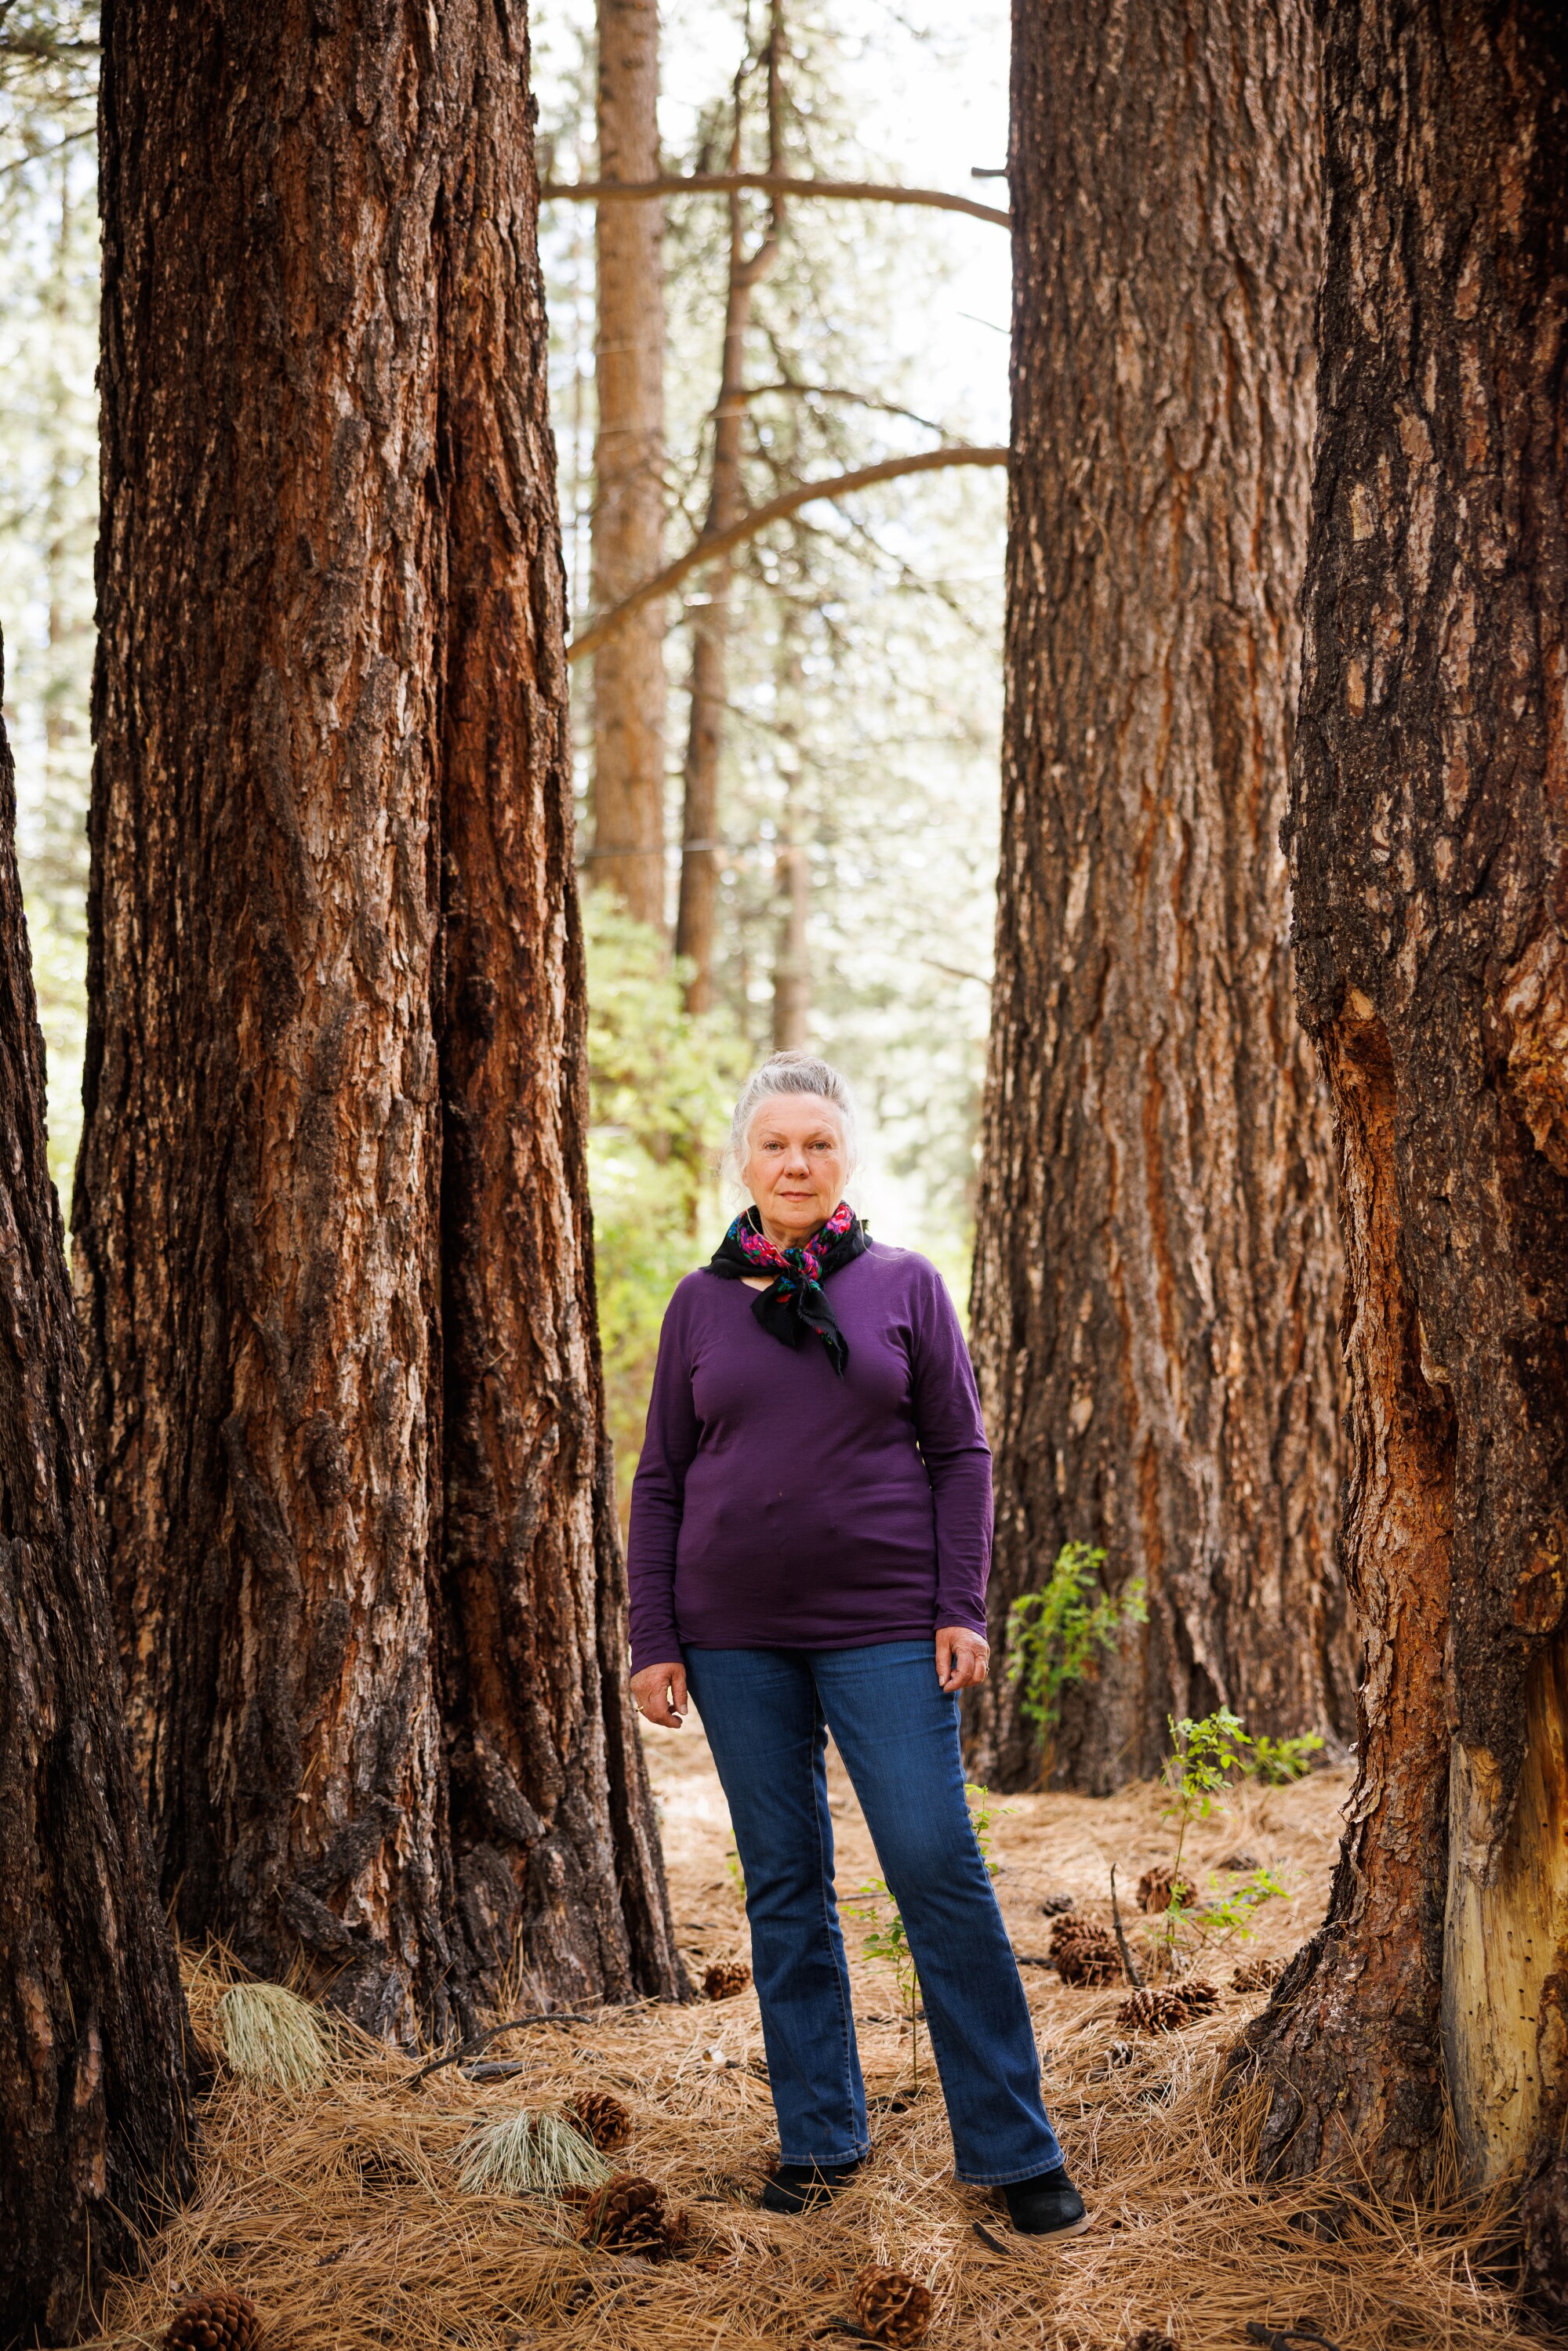 Женщина стоит среди сосновых шишек и иголок у основания нескольких больших деревьев